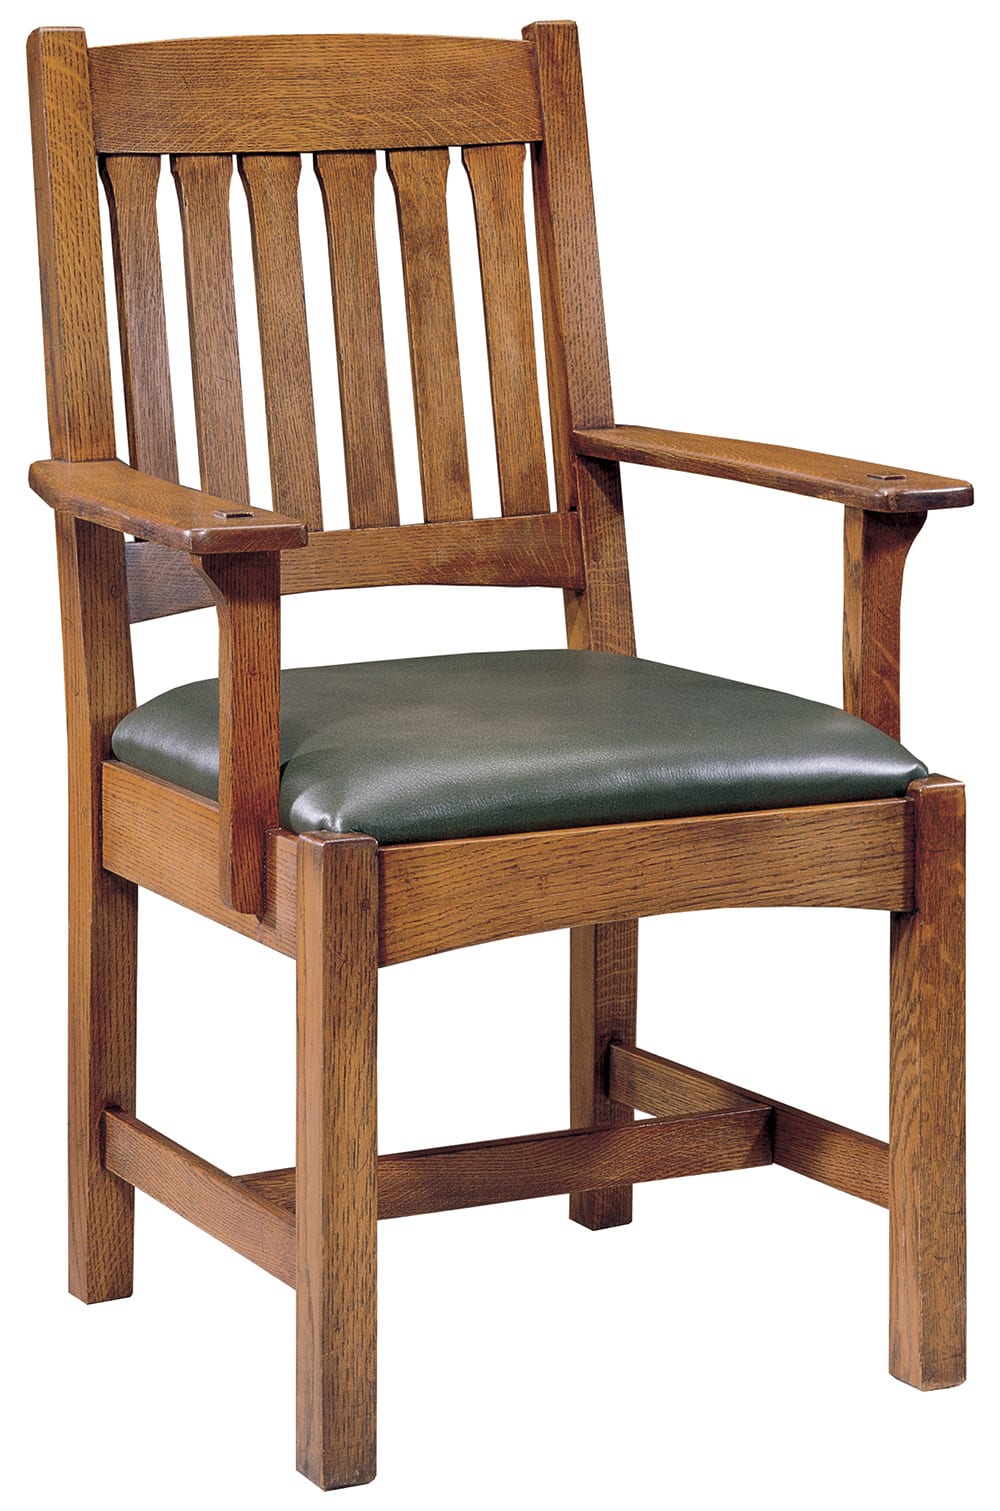 Cottage Arm Chair - Stickley Brand